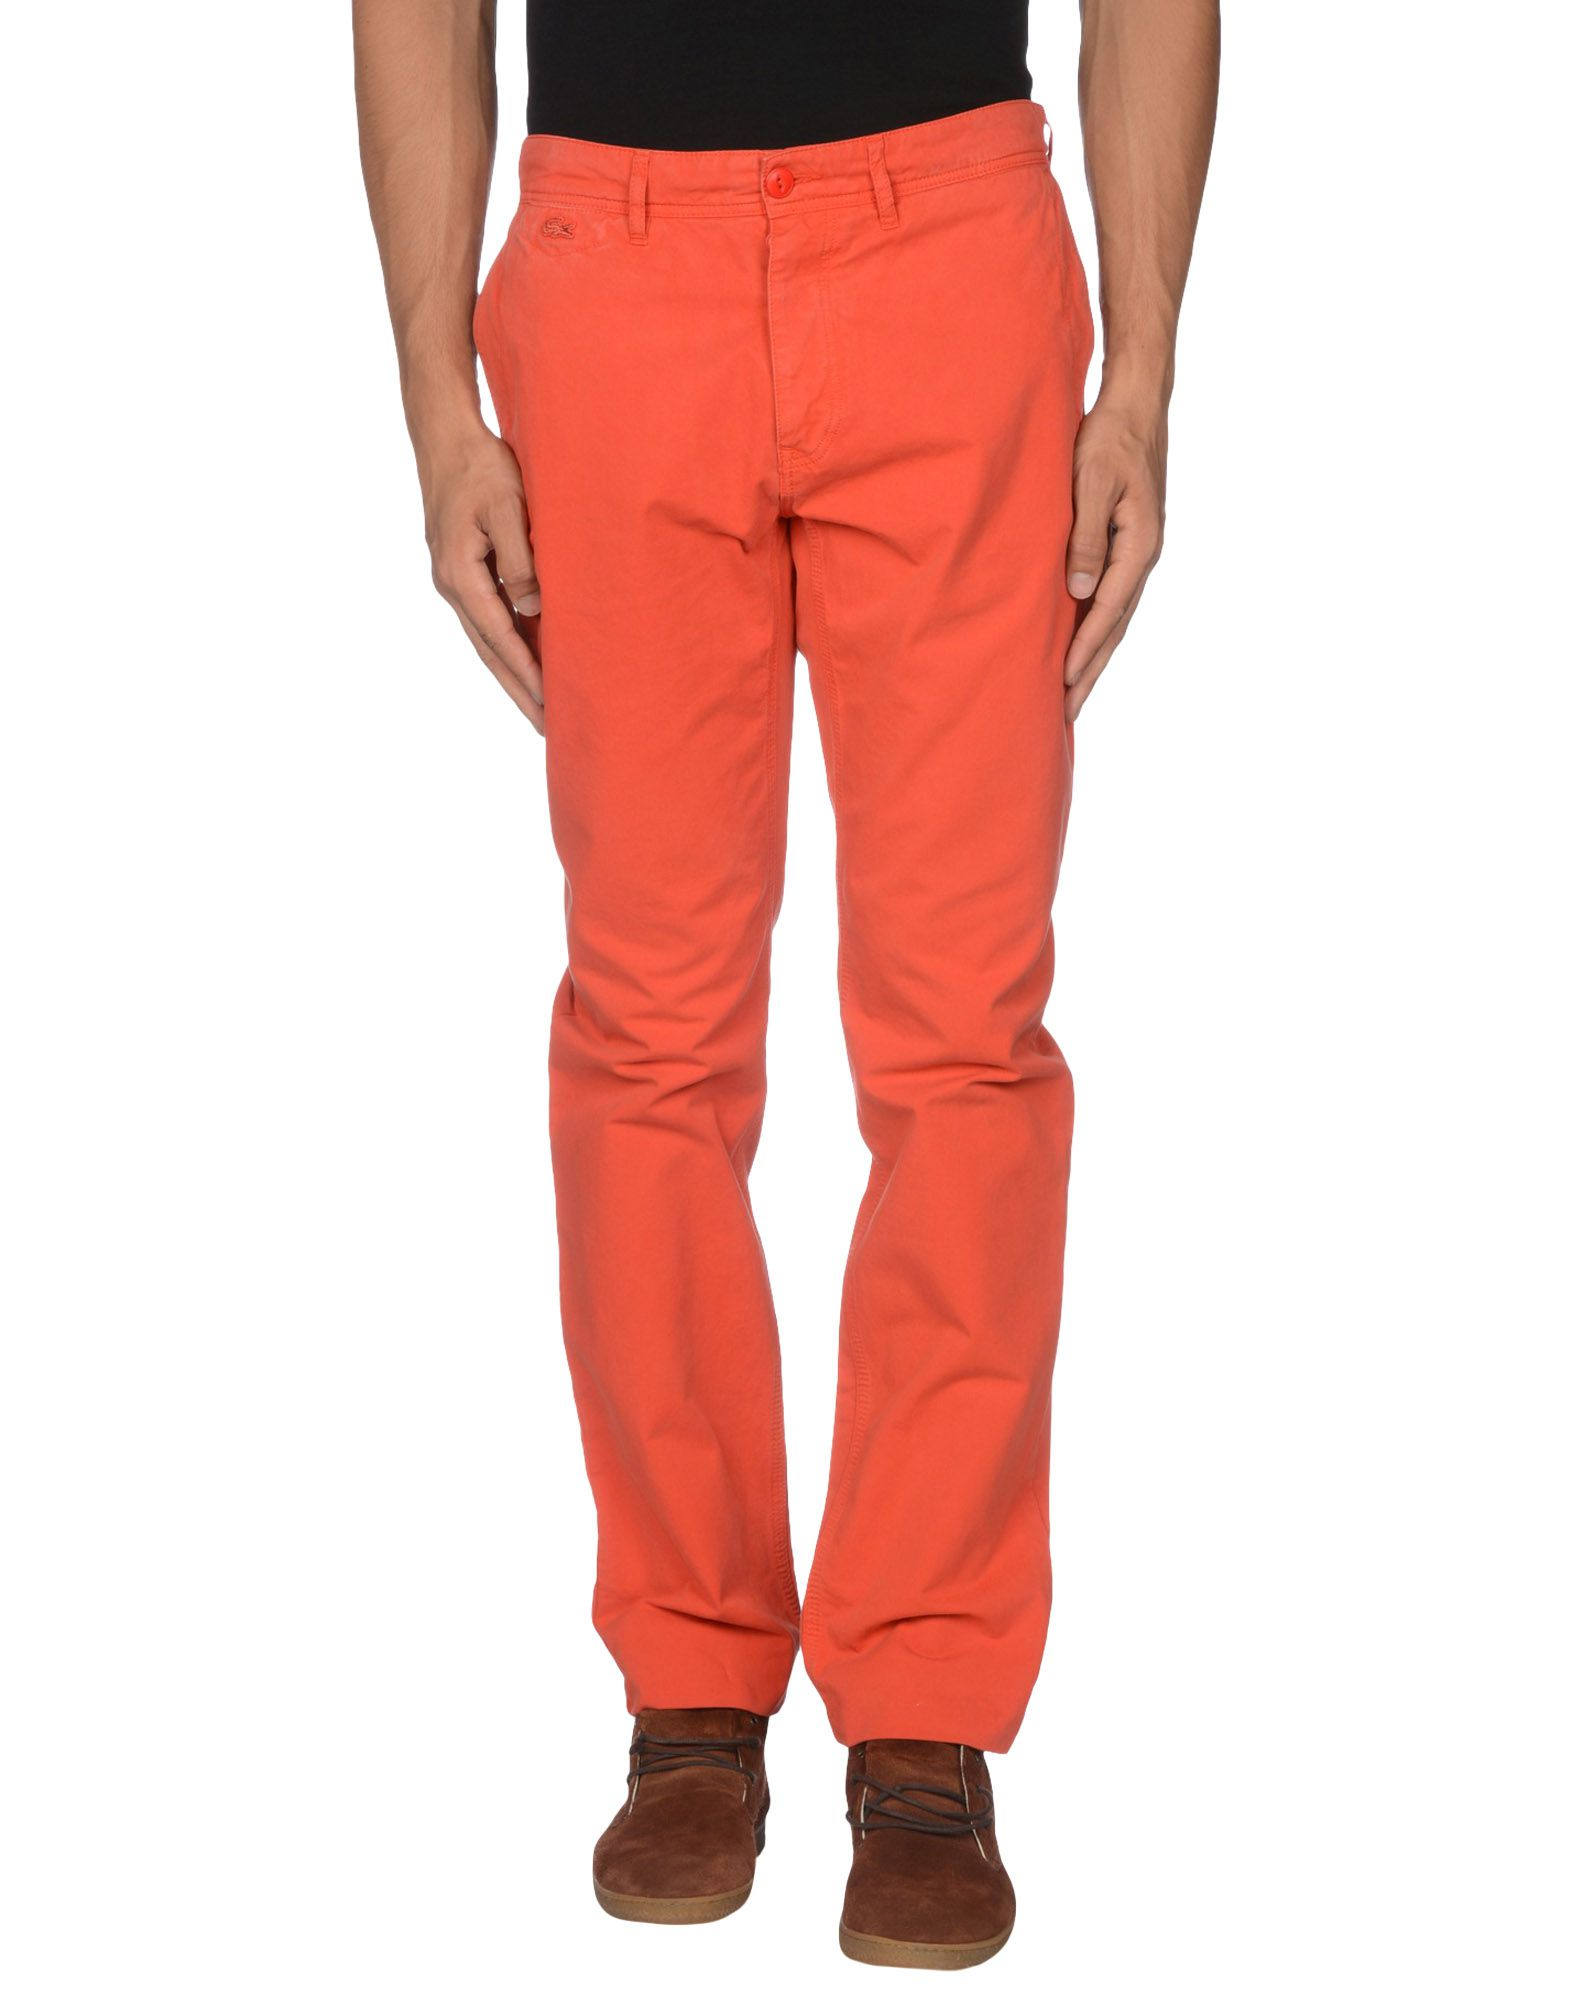 Lyst - Lacoste Casual Trouser in Orange for Men